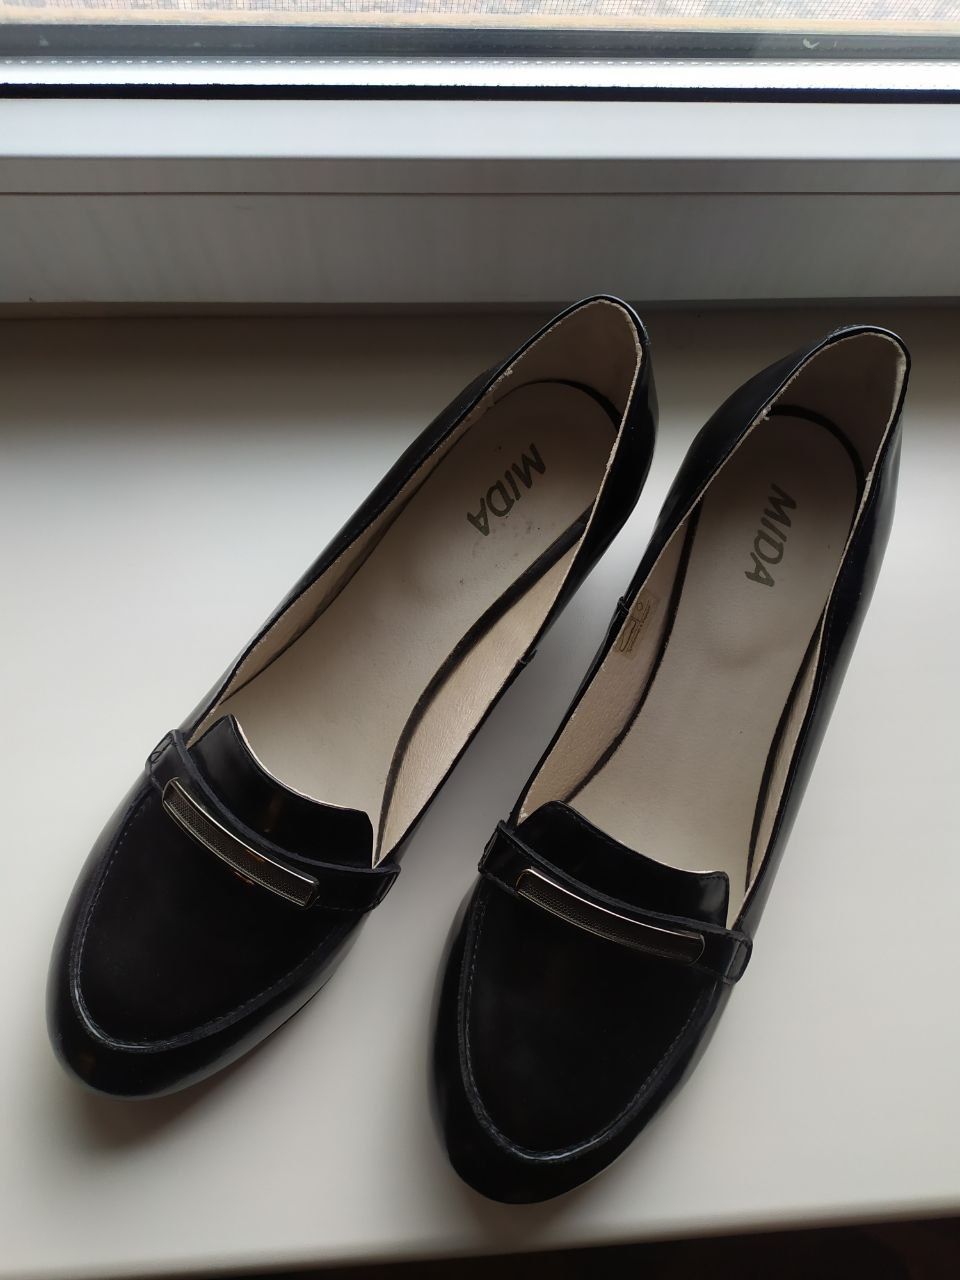 Стильные туфли Mida из натуральной кожи на каблуке черные модные